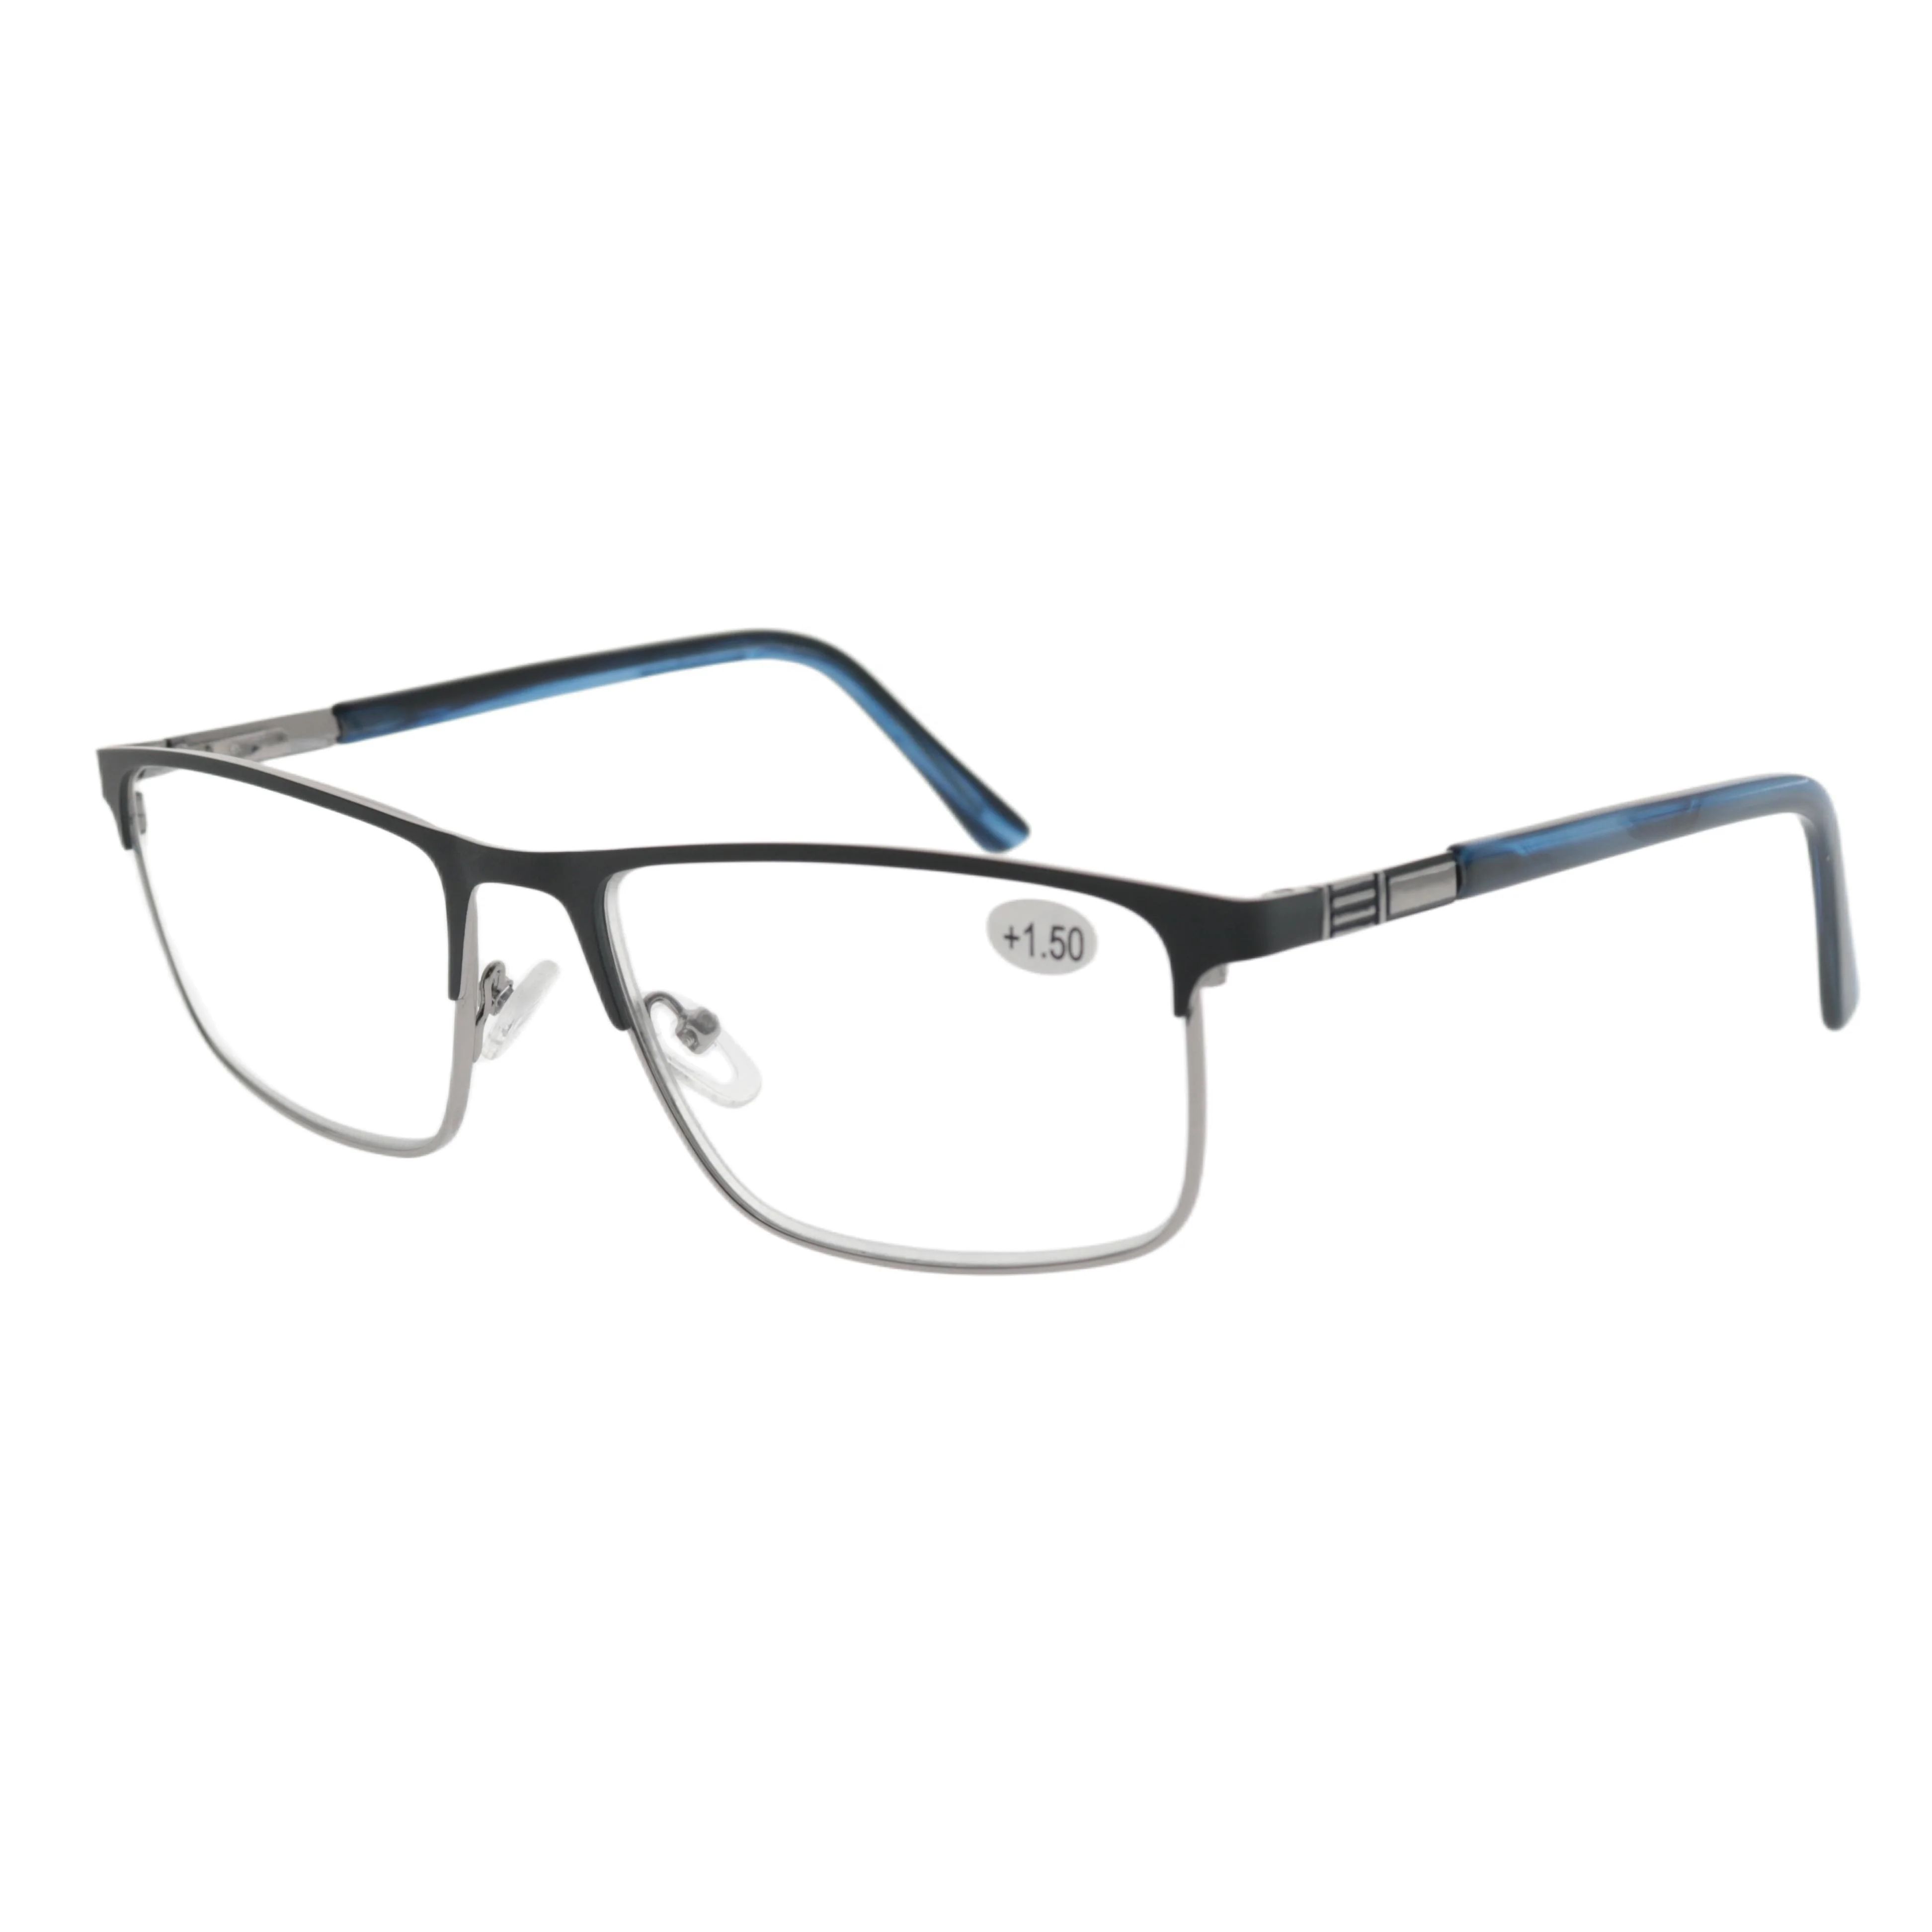 Очки для чтения Sunbest 2559 от производителя очков от производителя, индивидуальные пресбиопические очки, металлические прямоугольные пружинные петли, очки для чтения